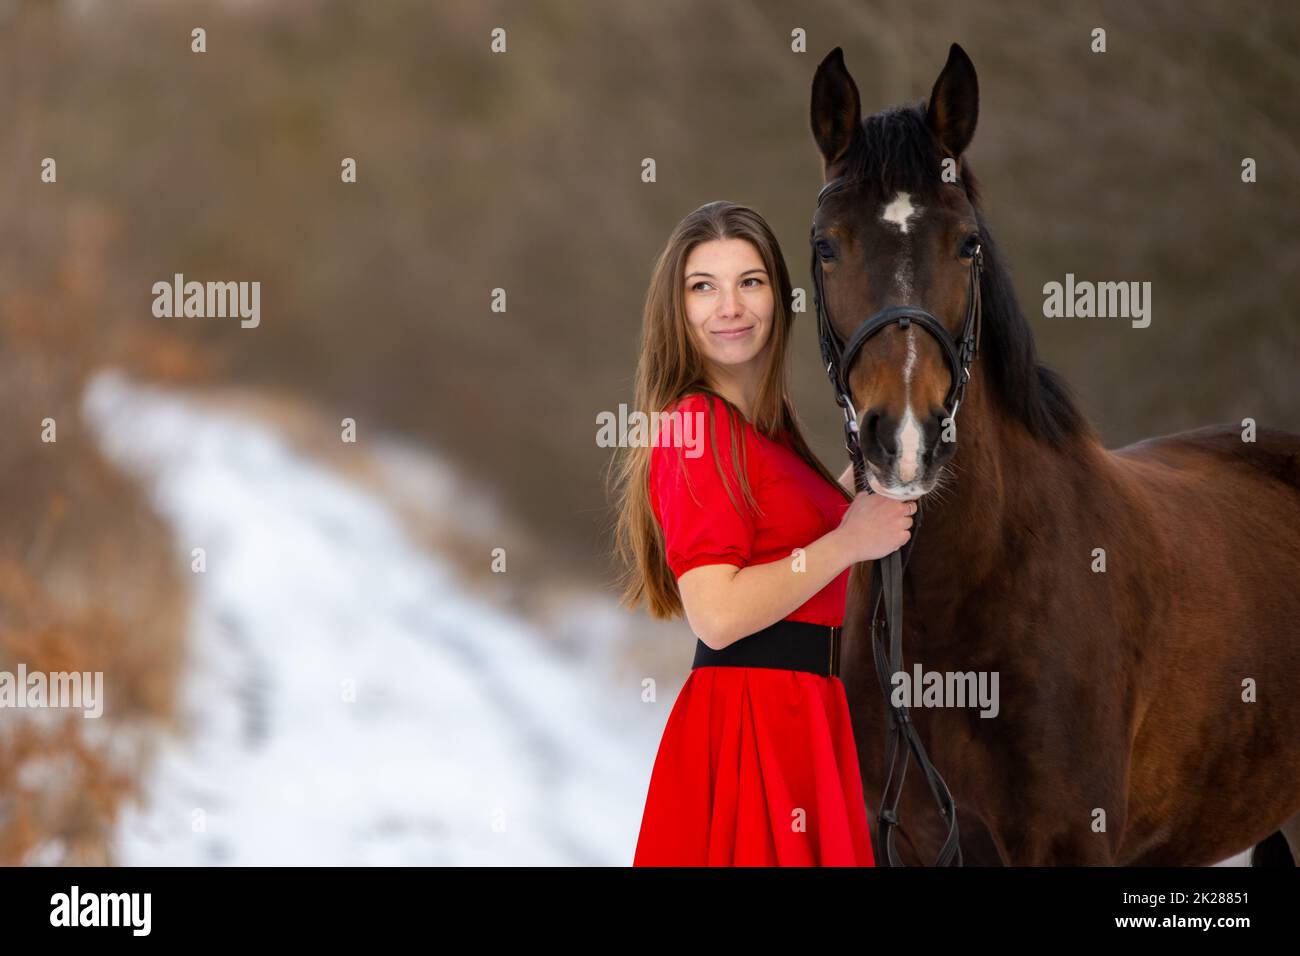 Portrait eines schönen Mädchens in einem roten Kleid, das mit einem Pferd auf dem Hintergrund einer Winterstraße steht Stockfoto